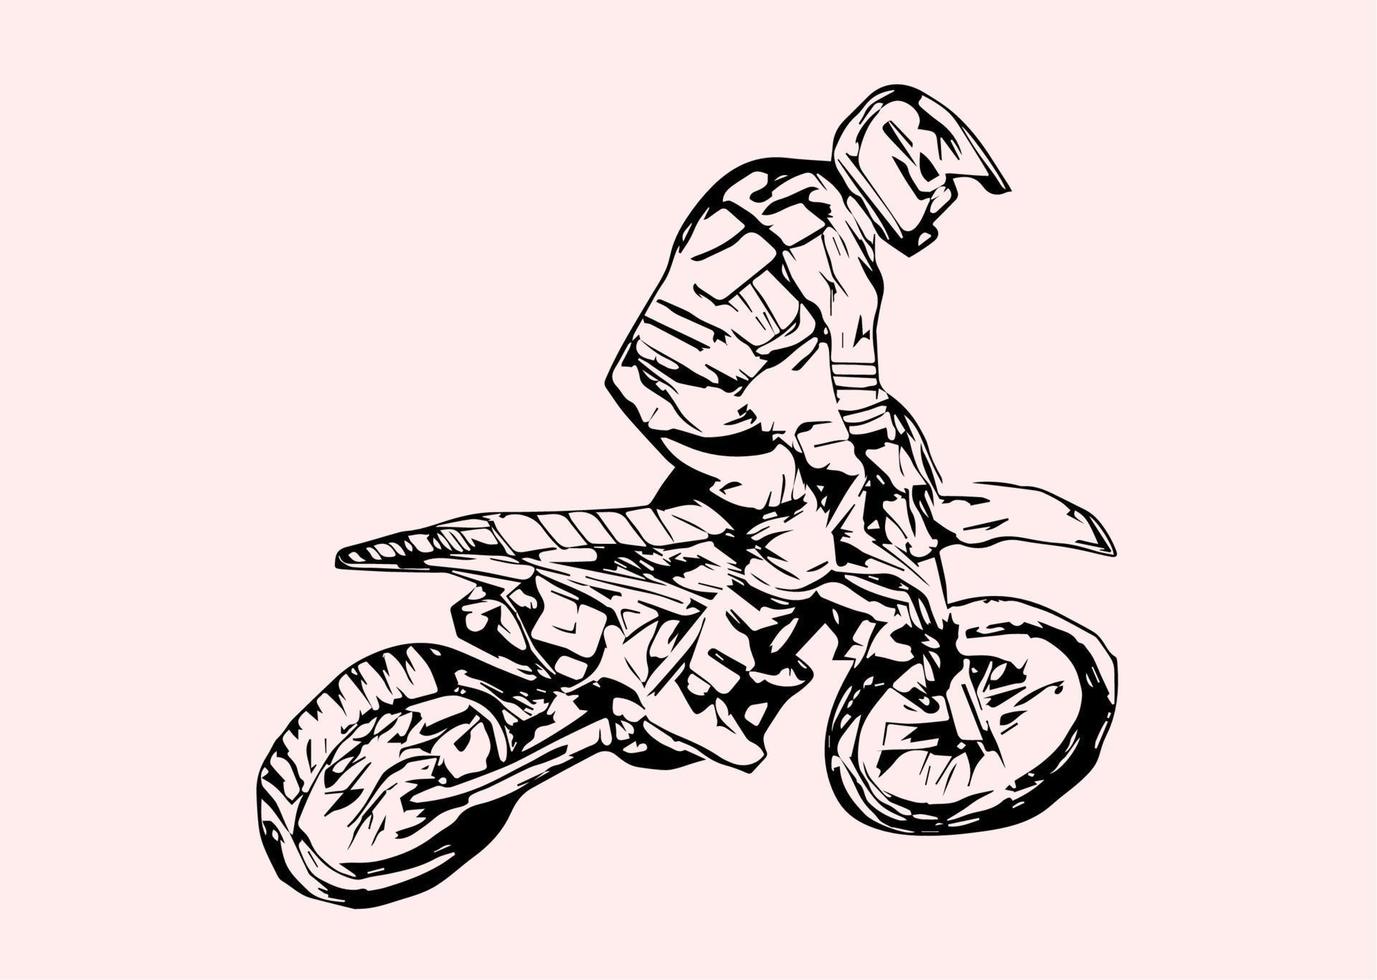 motocross salto silhouette vettore isolato su sfondo bianco.